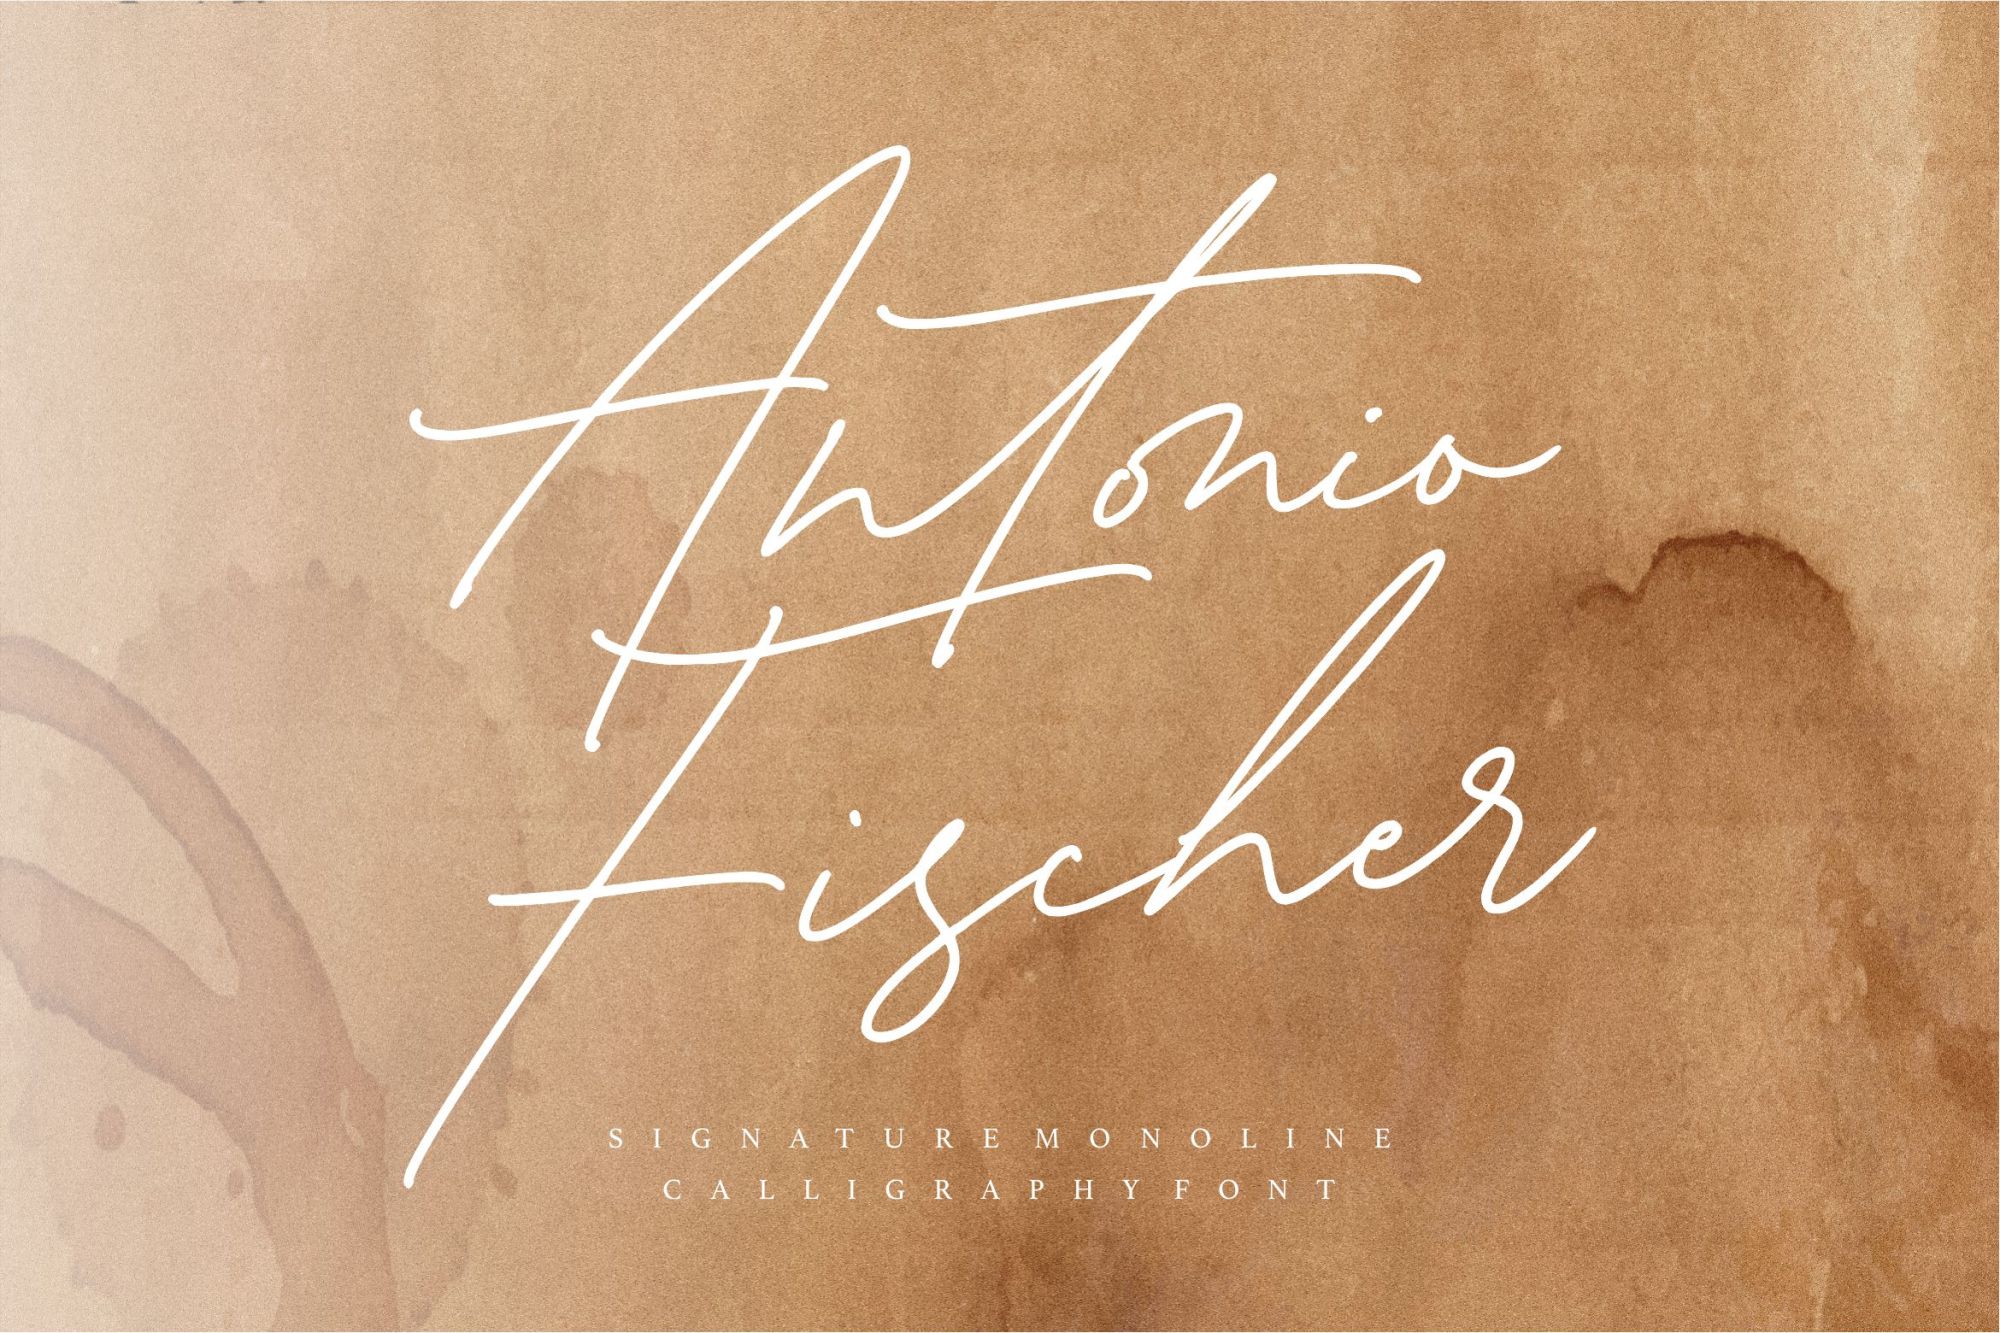 Antonio Fischer Signature Monoline Script Font